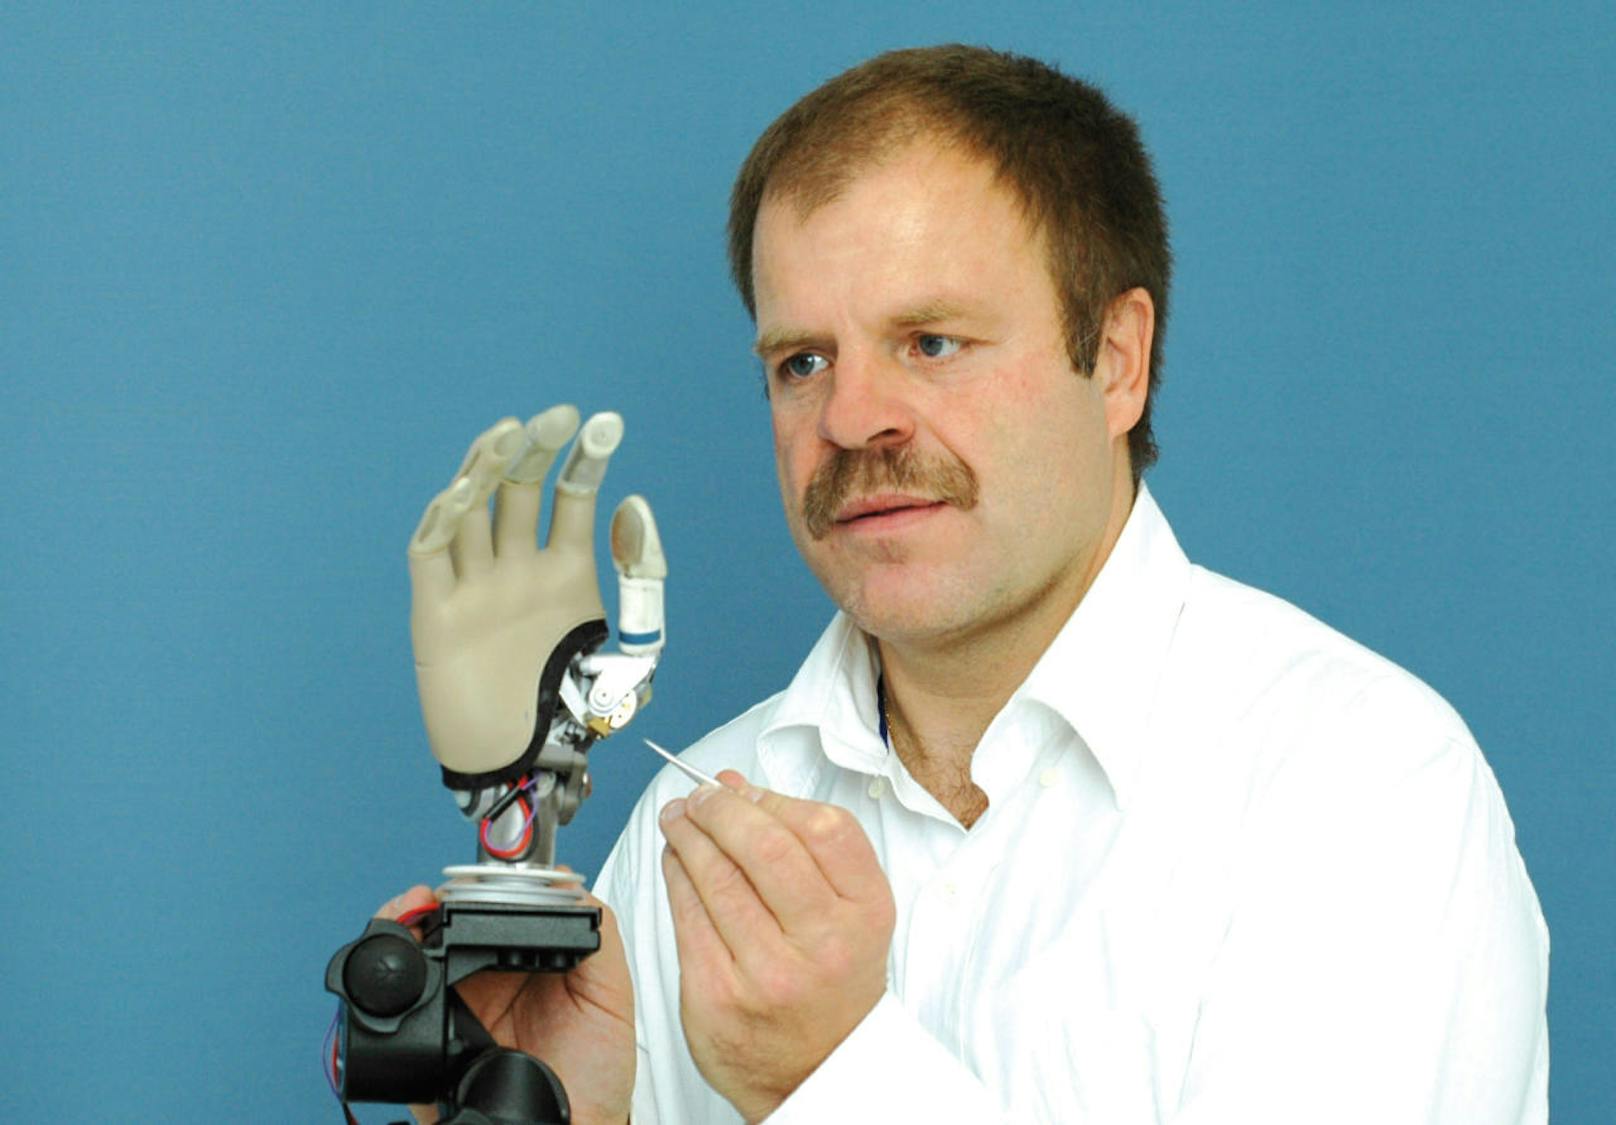 Bei der Station von Medizintechniker Hubert Egger können Interessierte selbst eine Handprothese steuern.